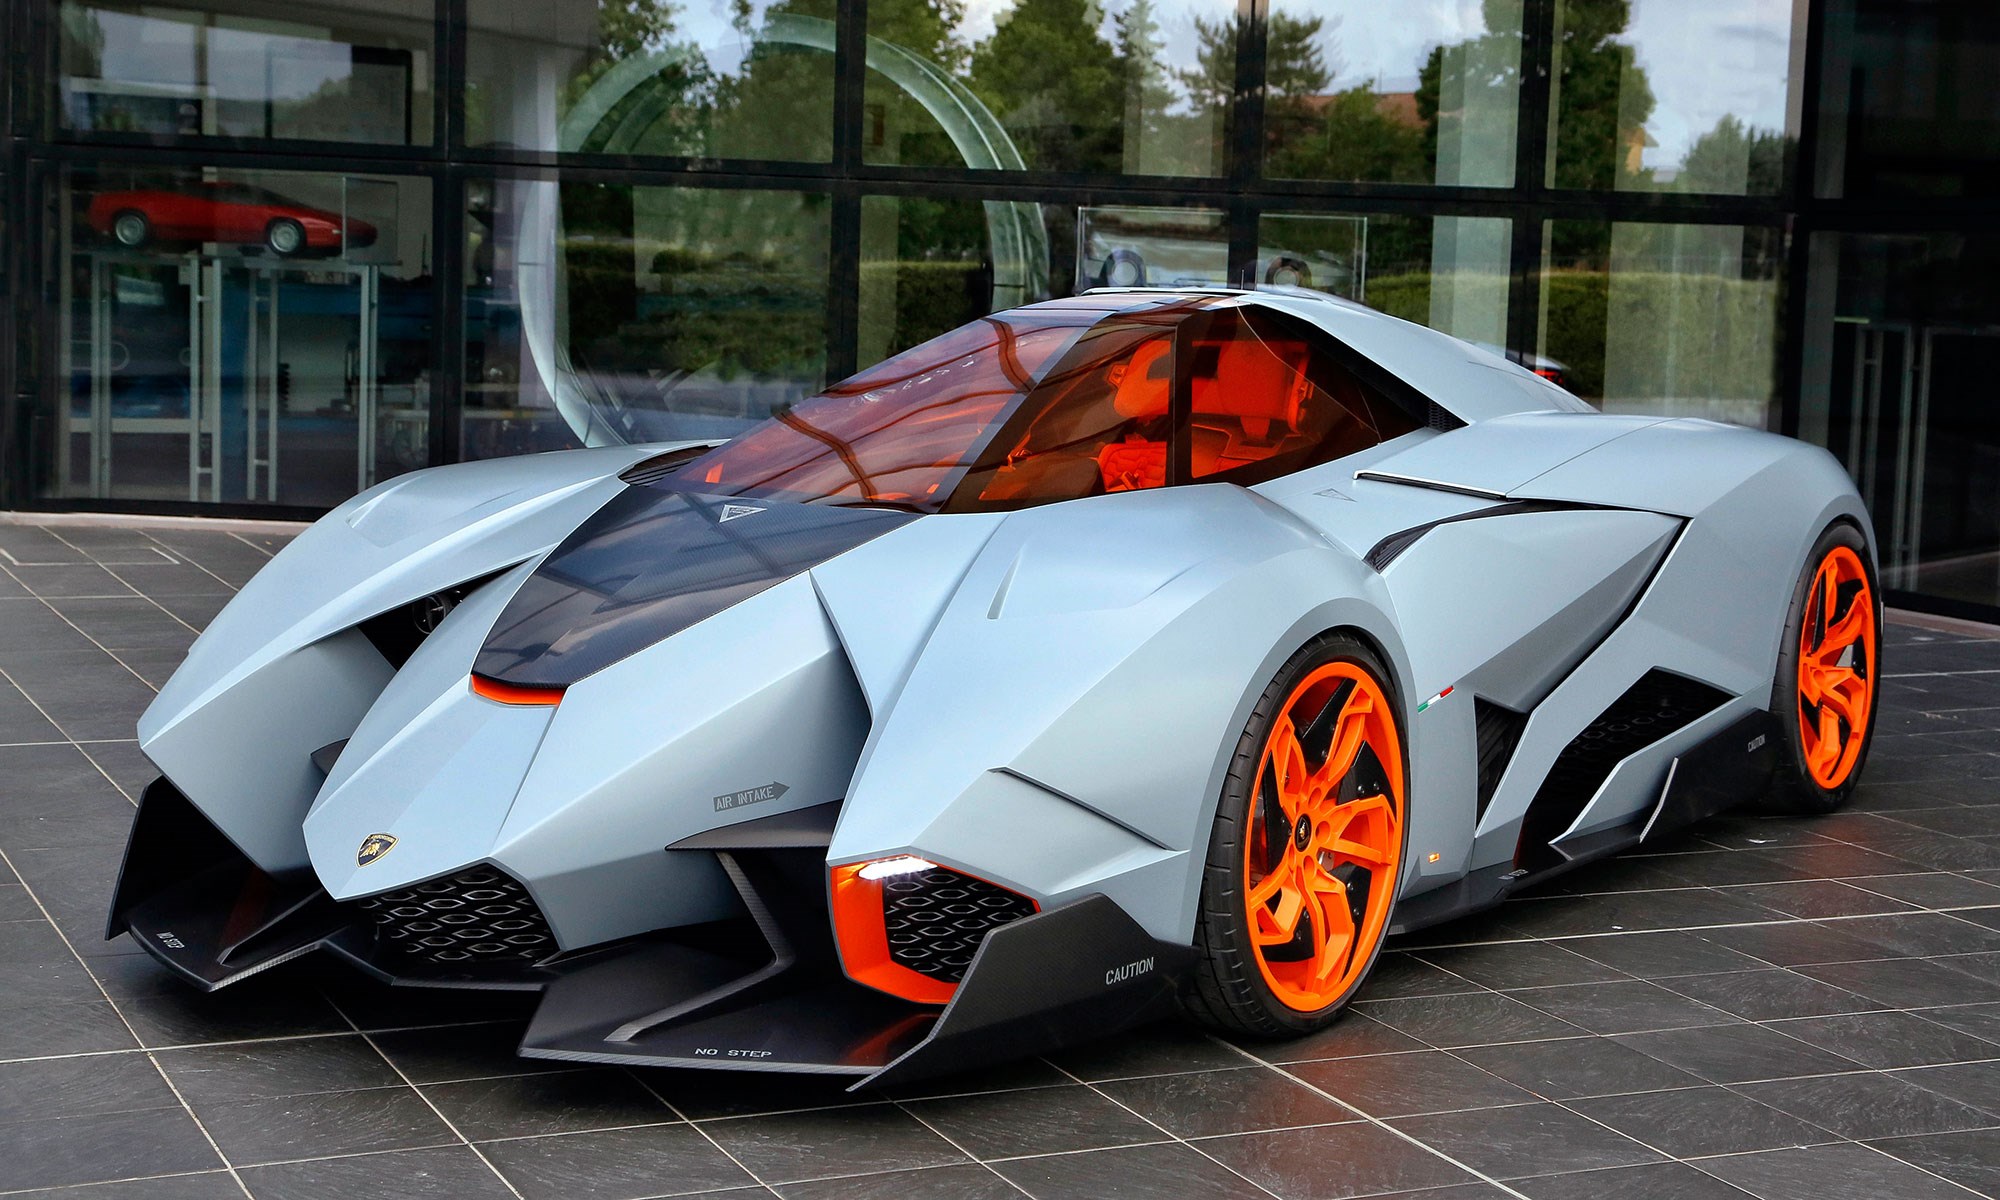 The Car Top 10 Wildest Lamborghinis Car Magazine